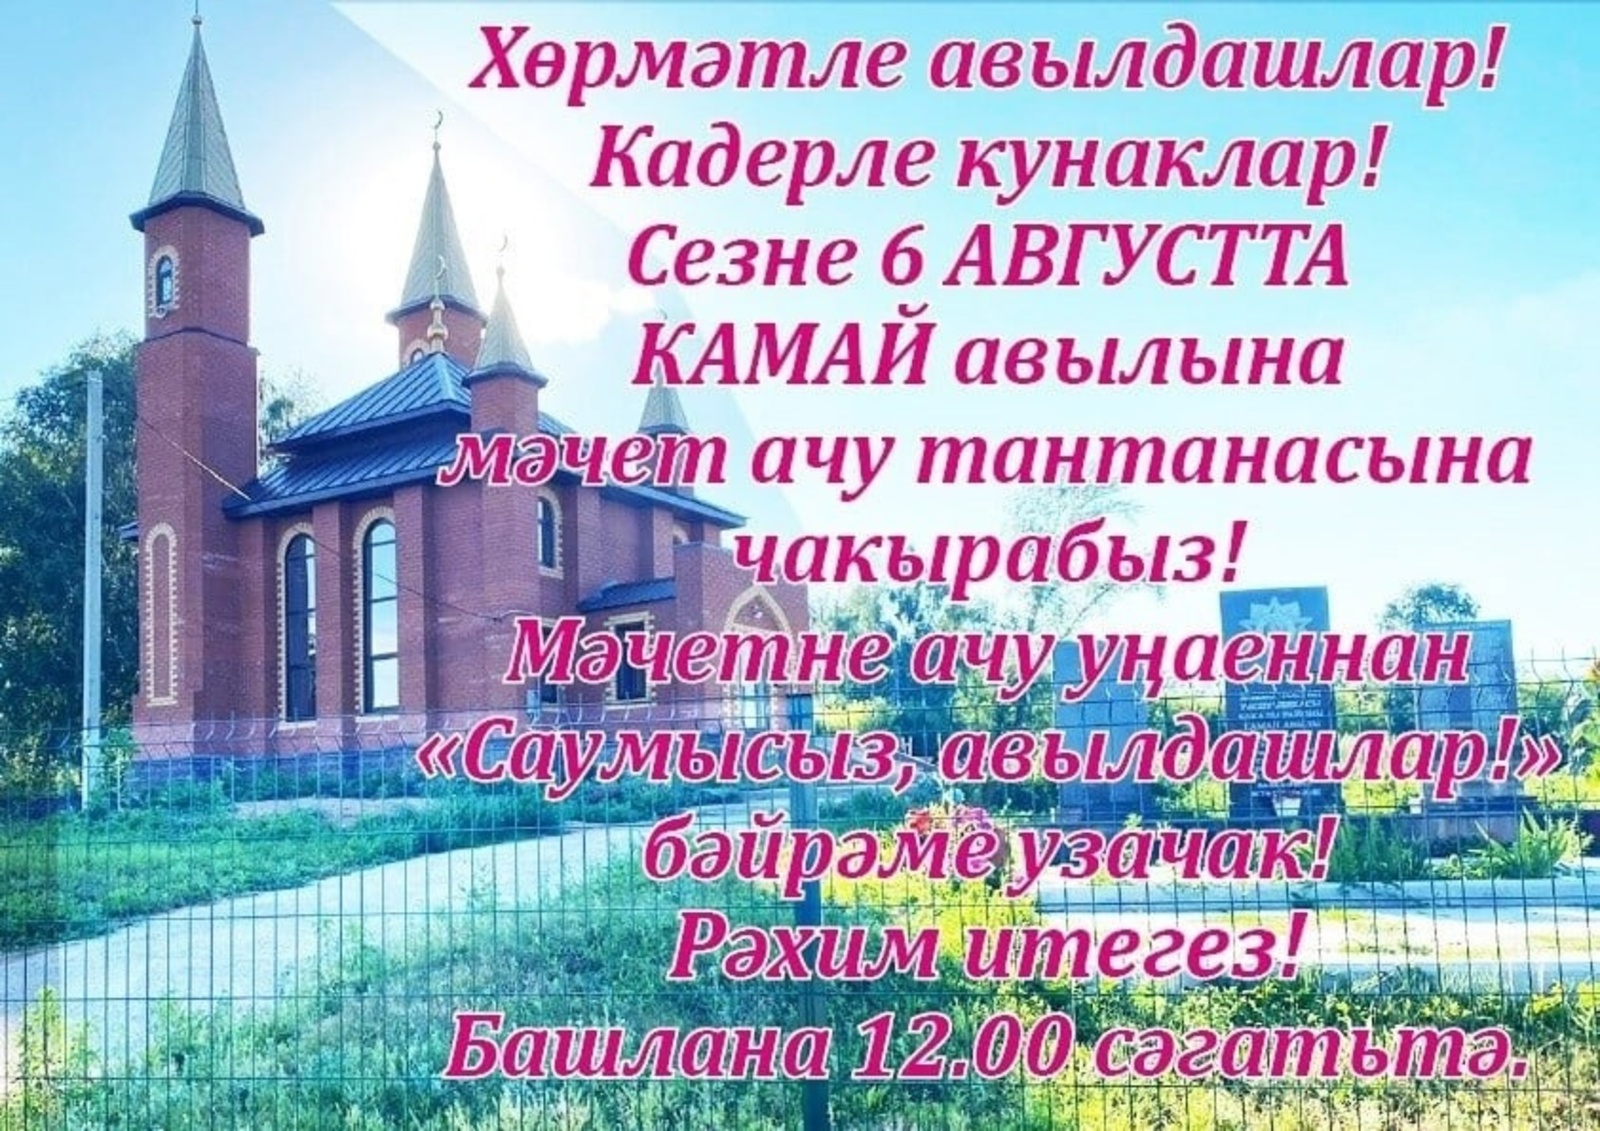 В Камаево  состоится праздник «Здравствуйте, односельчане!».